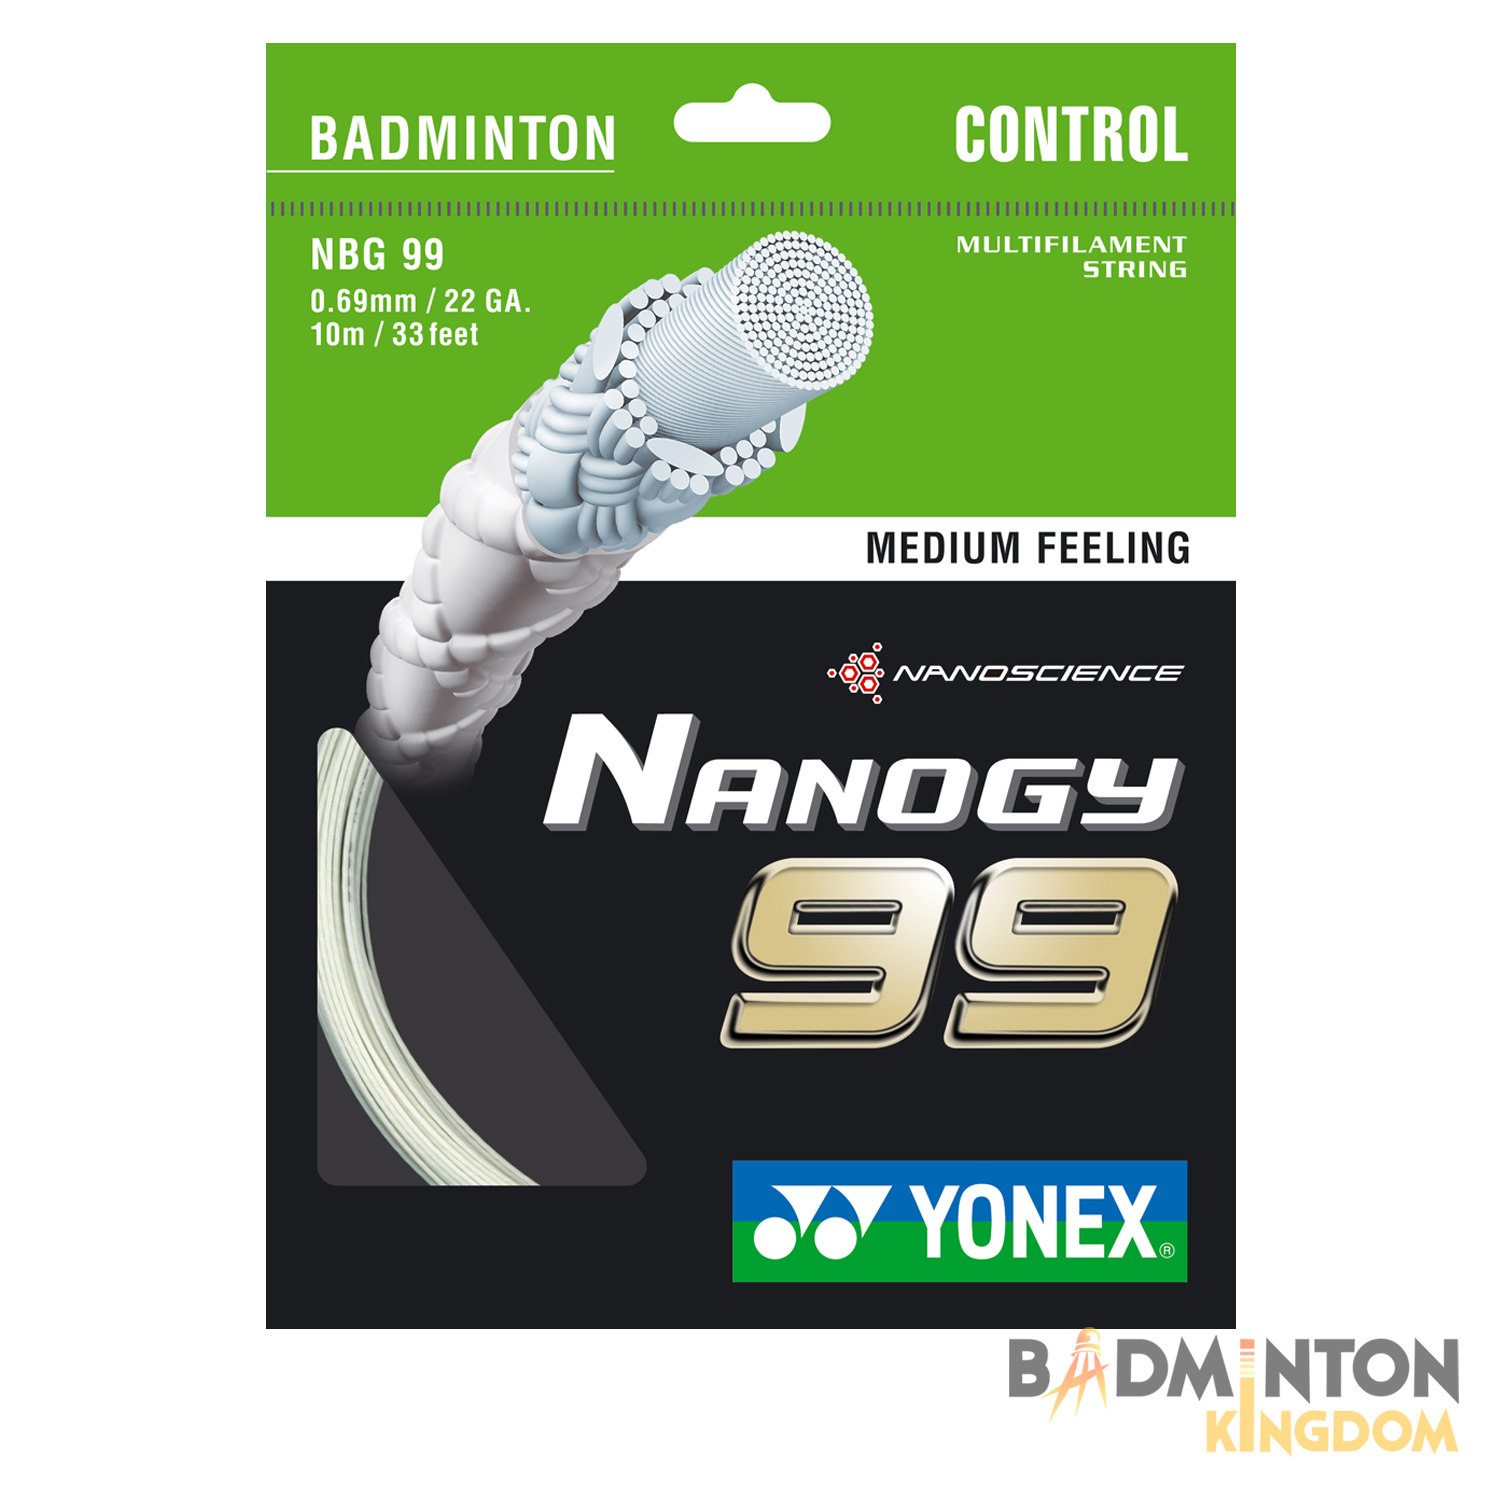 yonex-nanogy-99-badminton-string-single-set